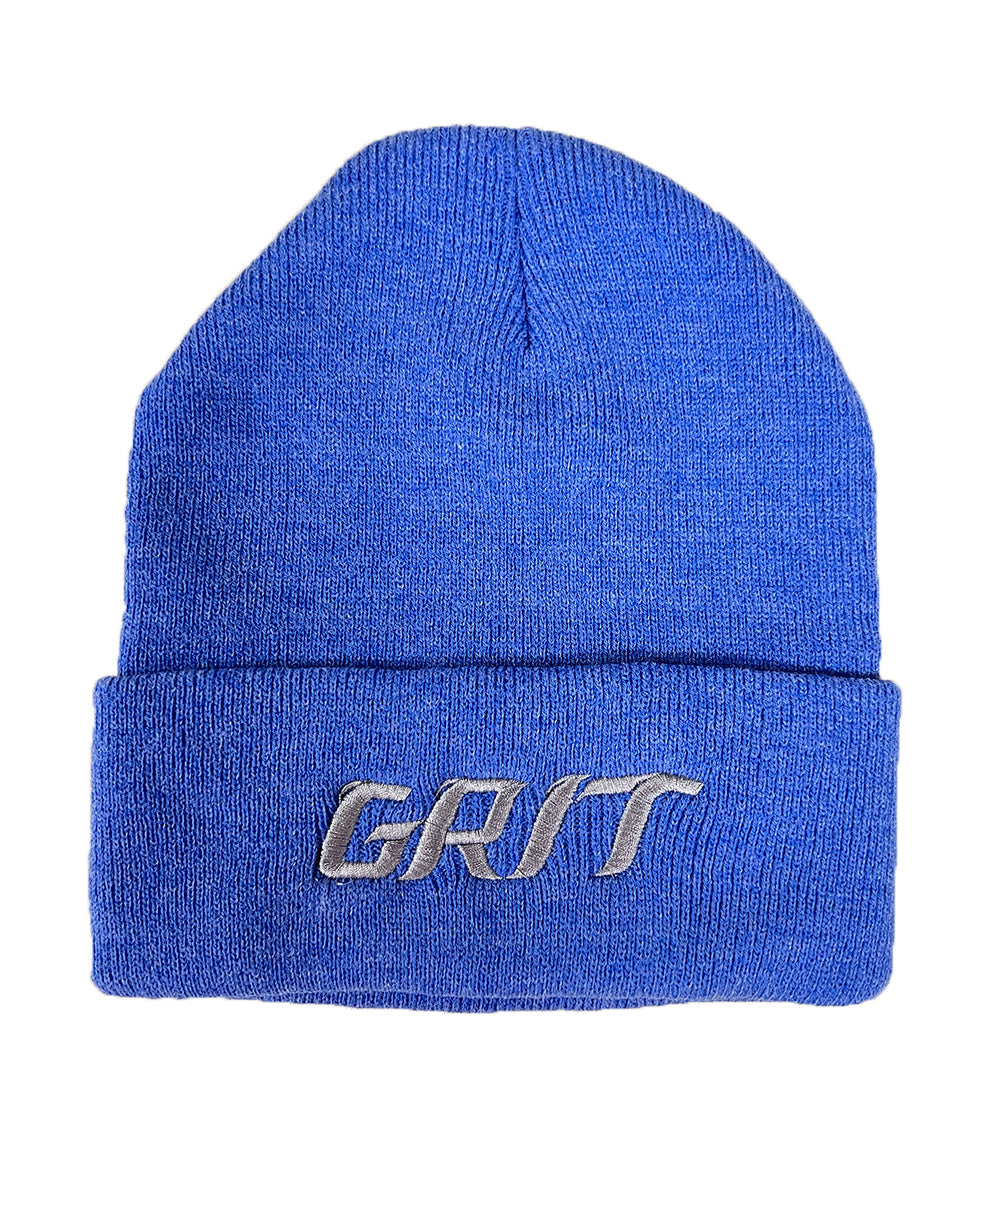 GRIT Knit